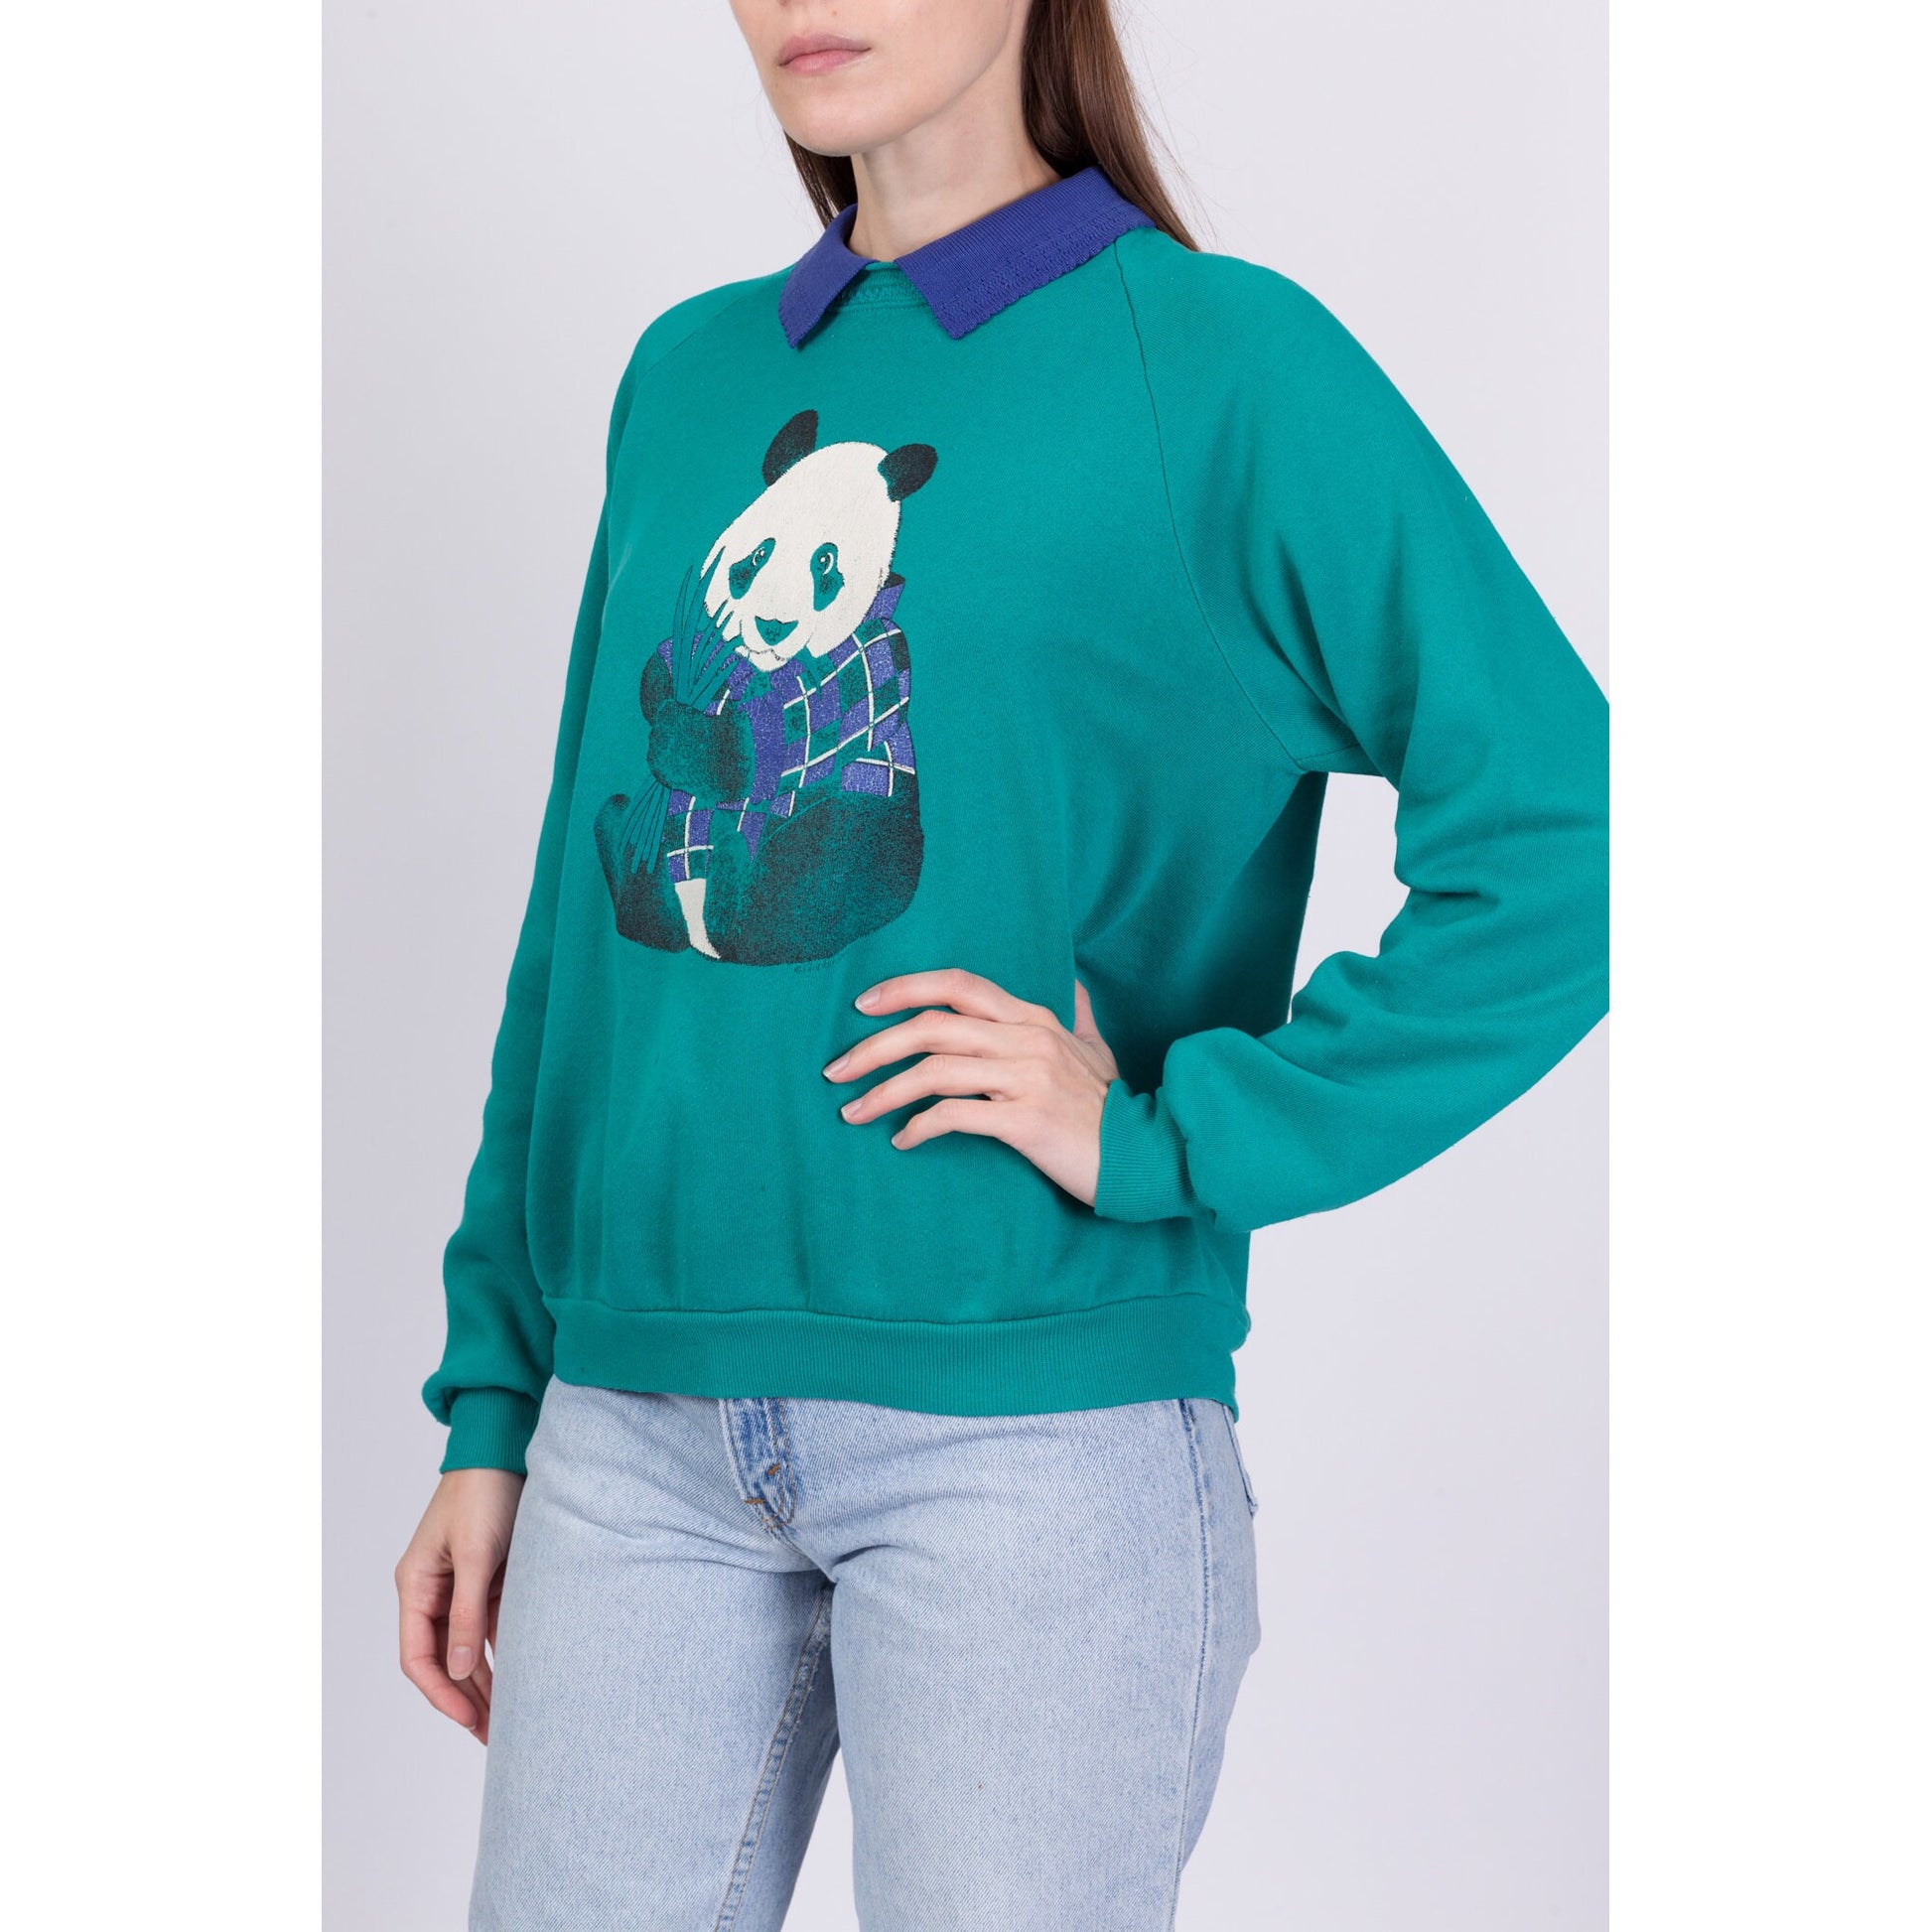 90s Panda Collared Sweatshirt - Large 